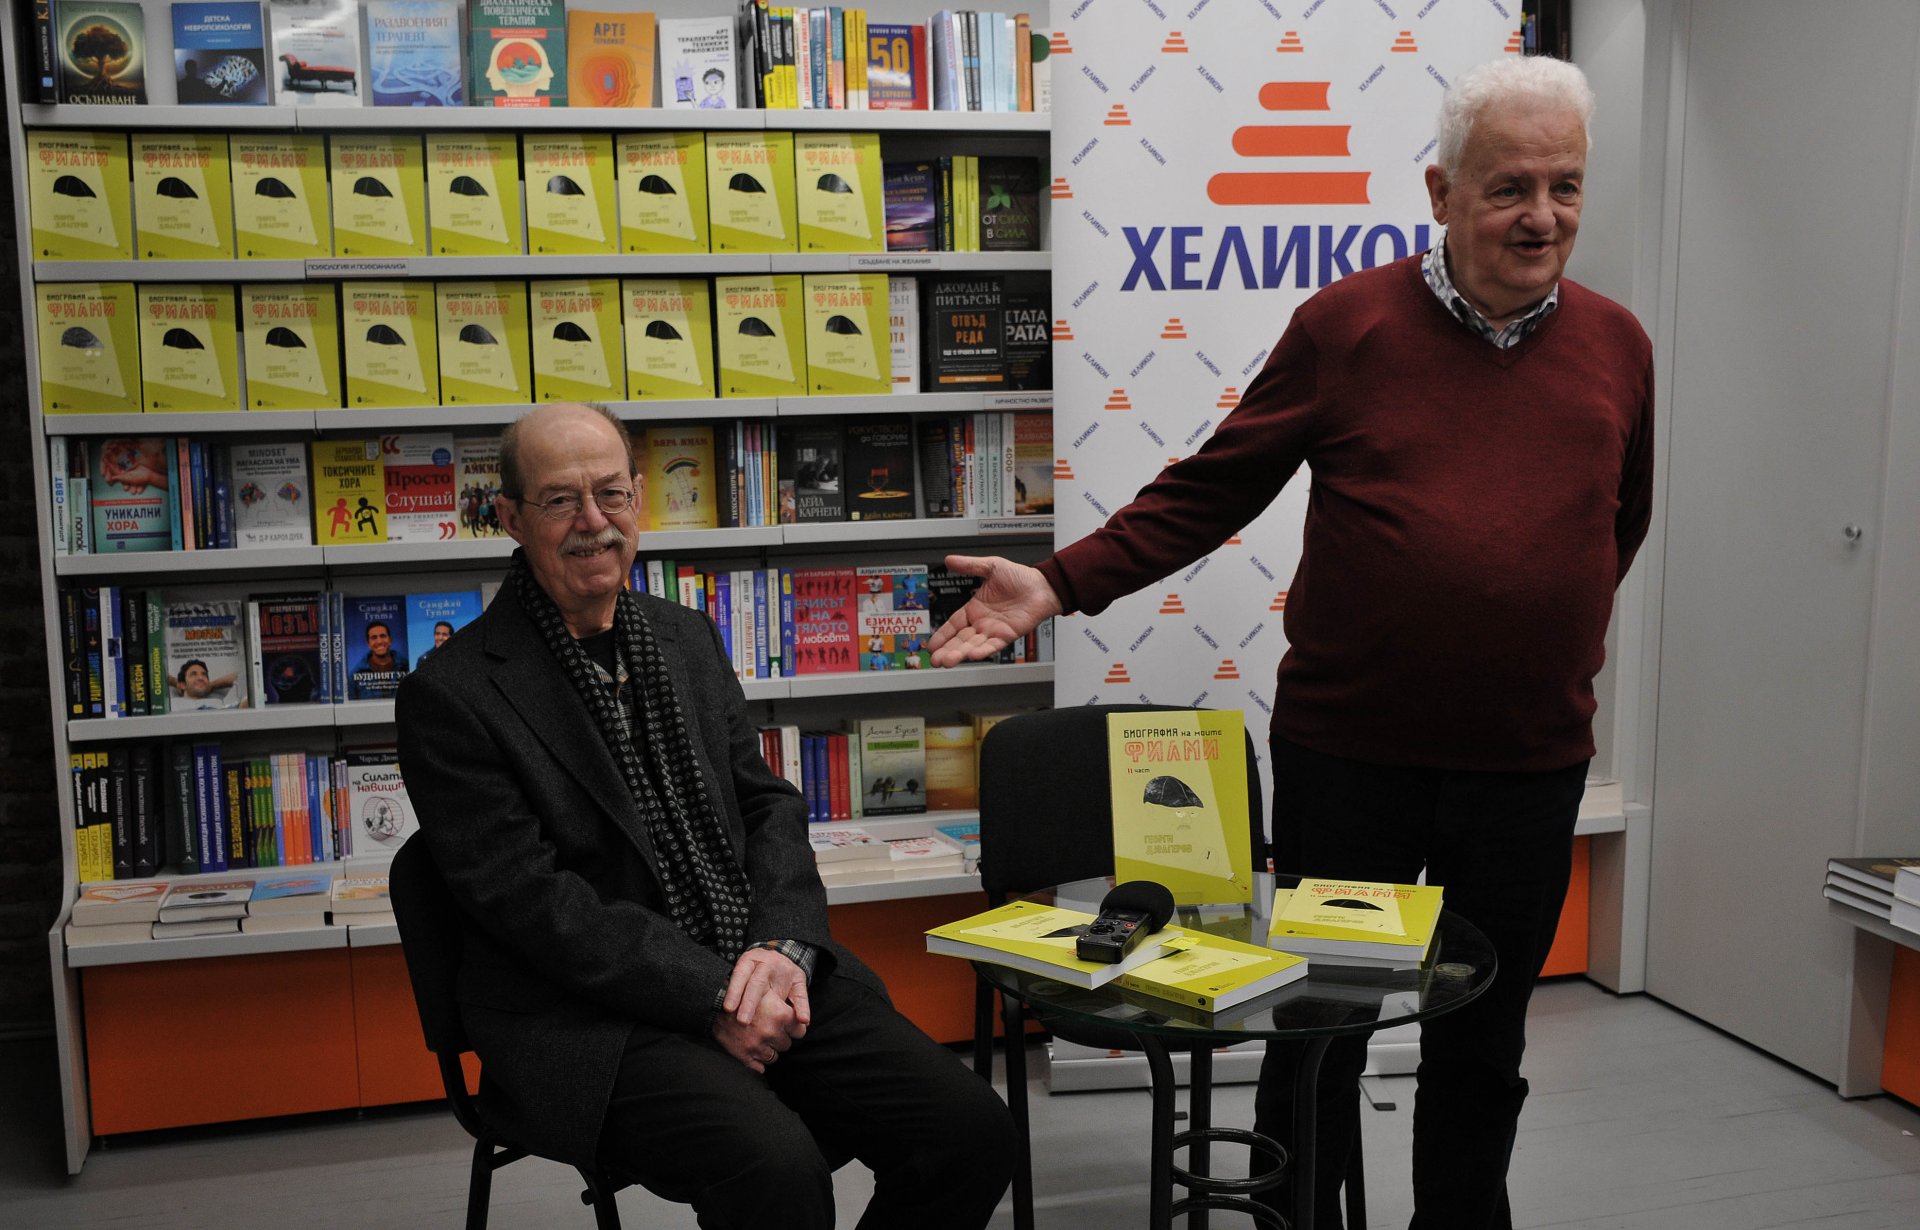 Режисьорът представя премиерно втората част на книгата си "Биография на моите филми" в новата книжарница "Хеликон" в Бургас